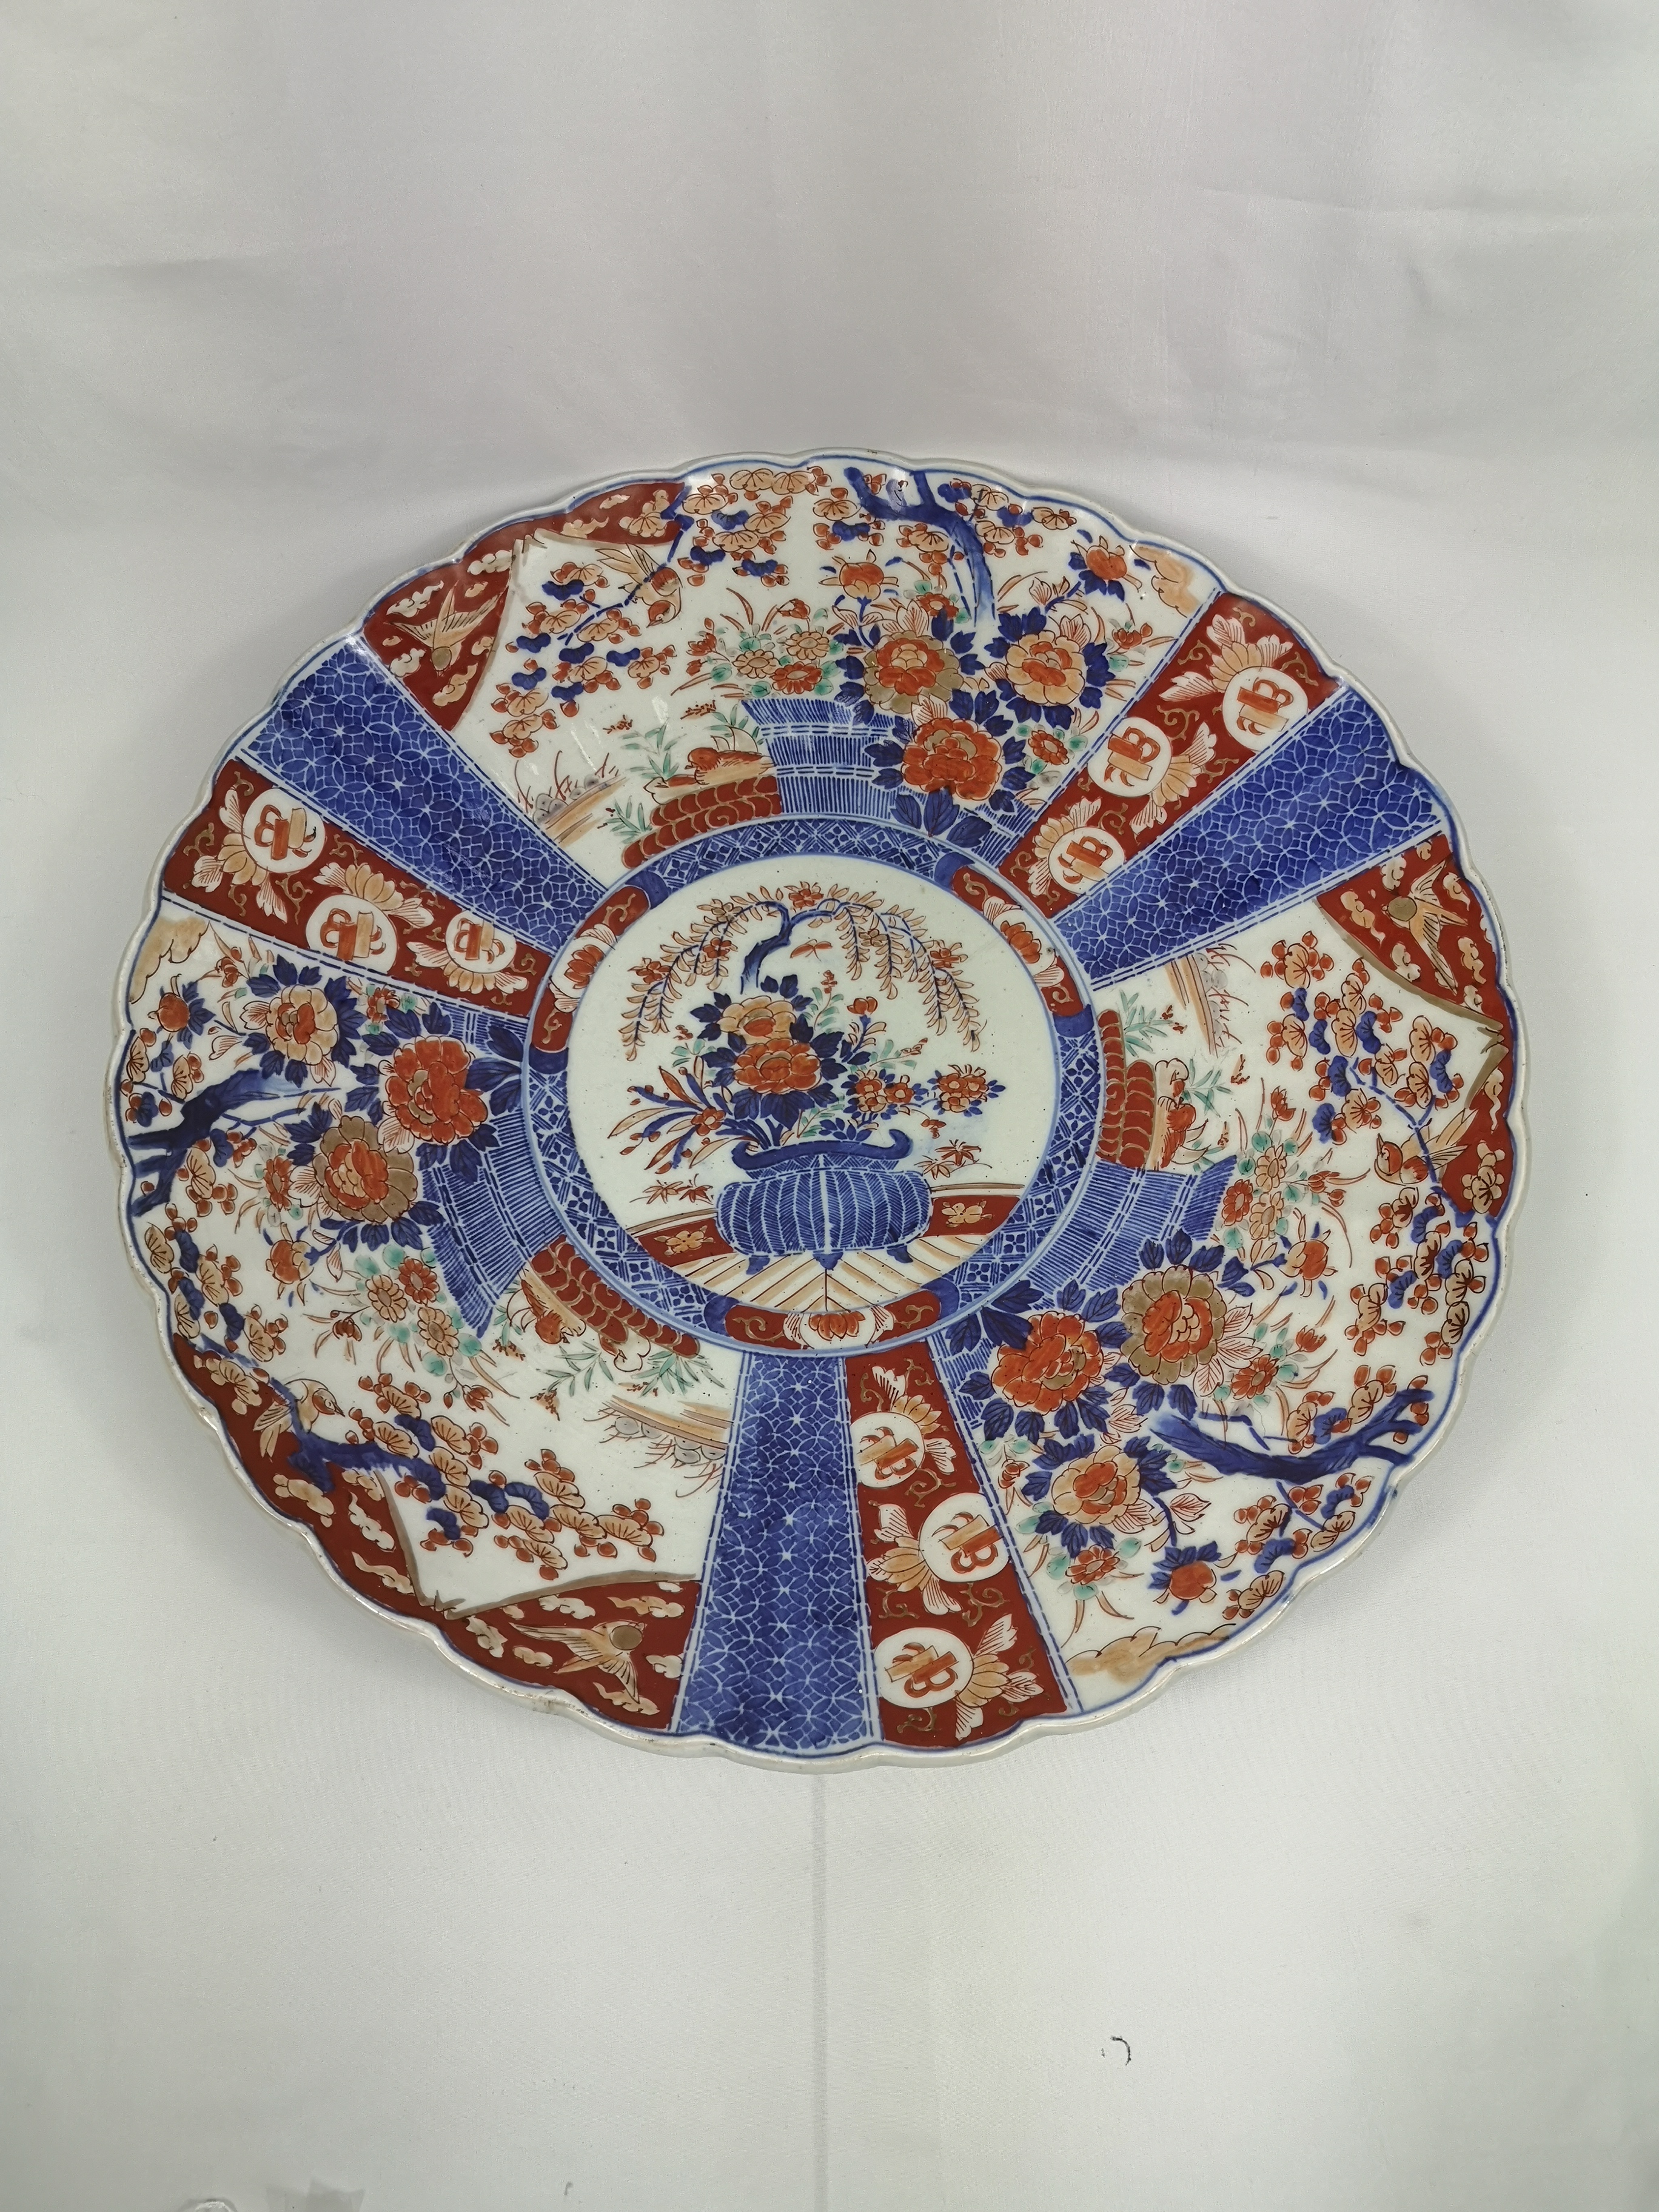 19th century Imari dish - Image 2 of 2